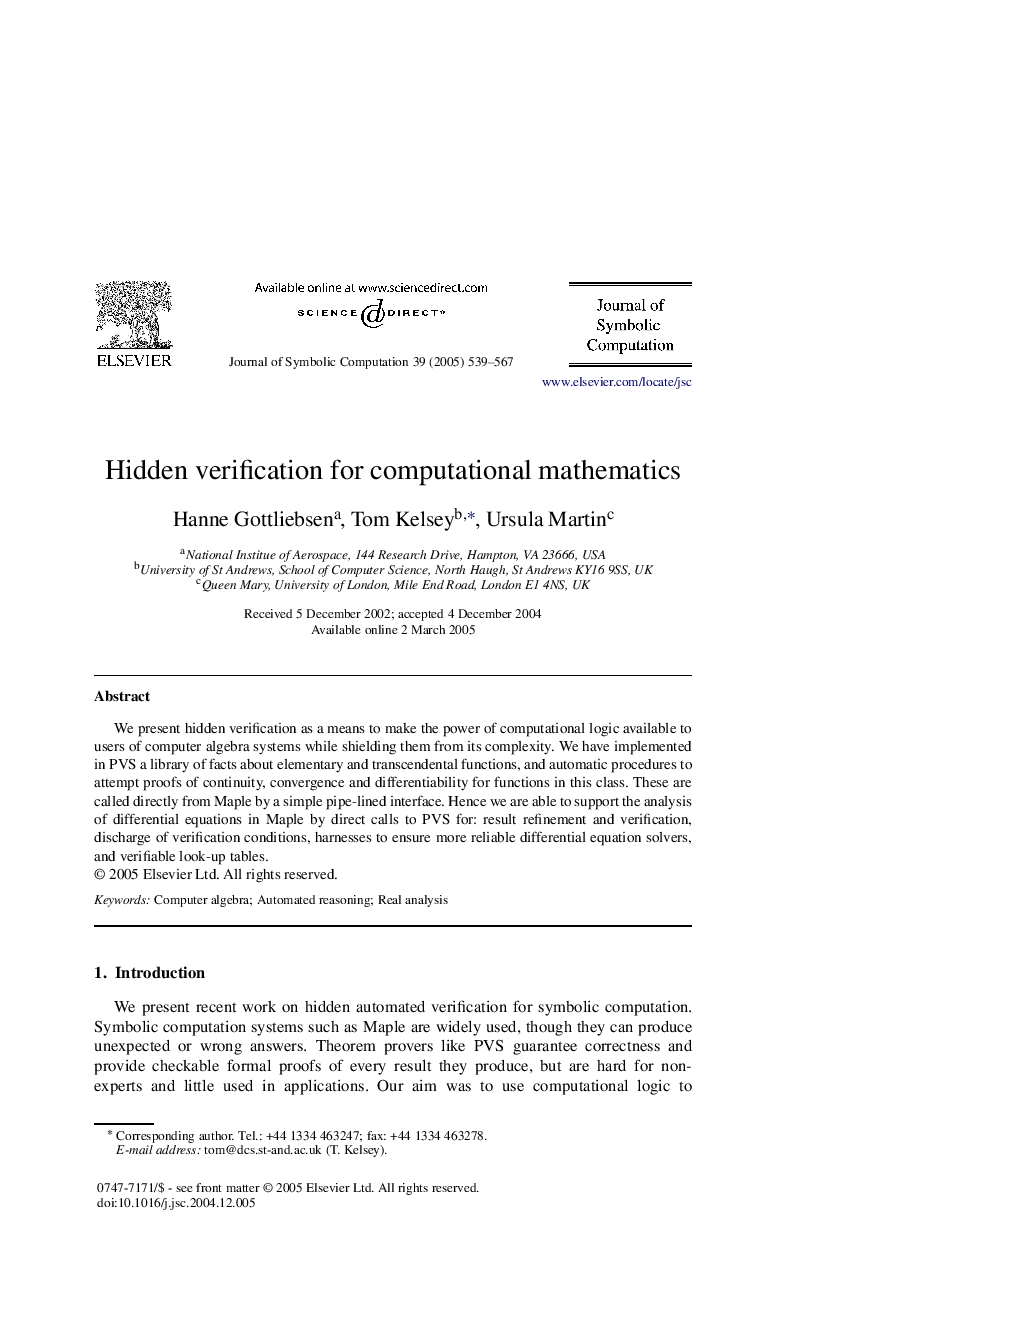 Hidden verification for computational mathematics